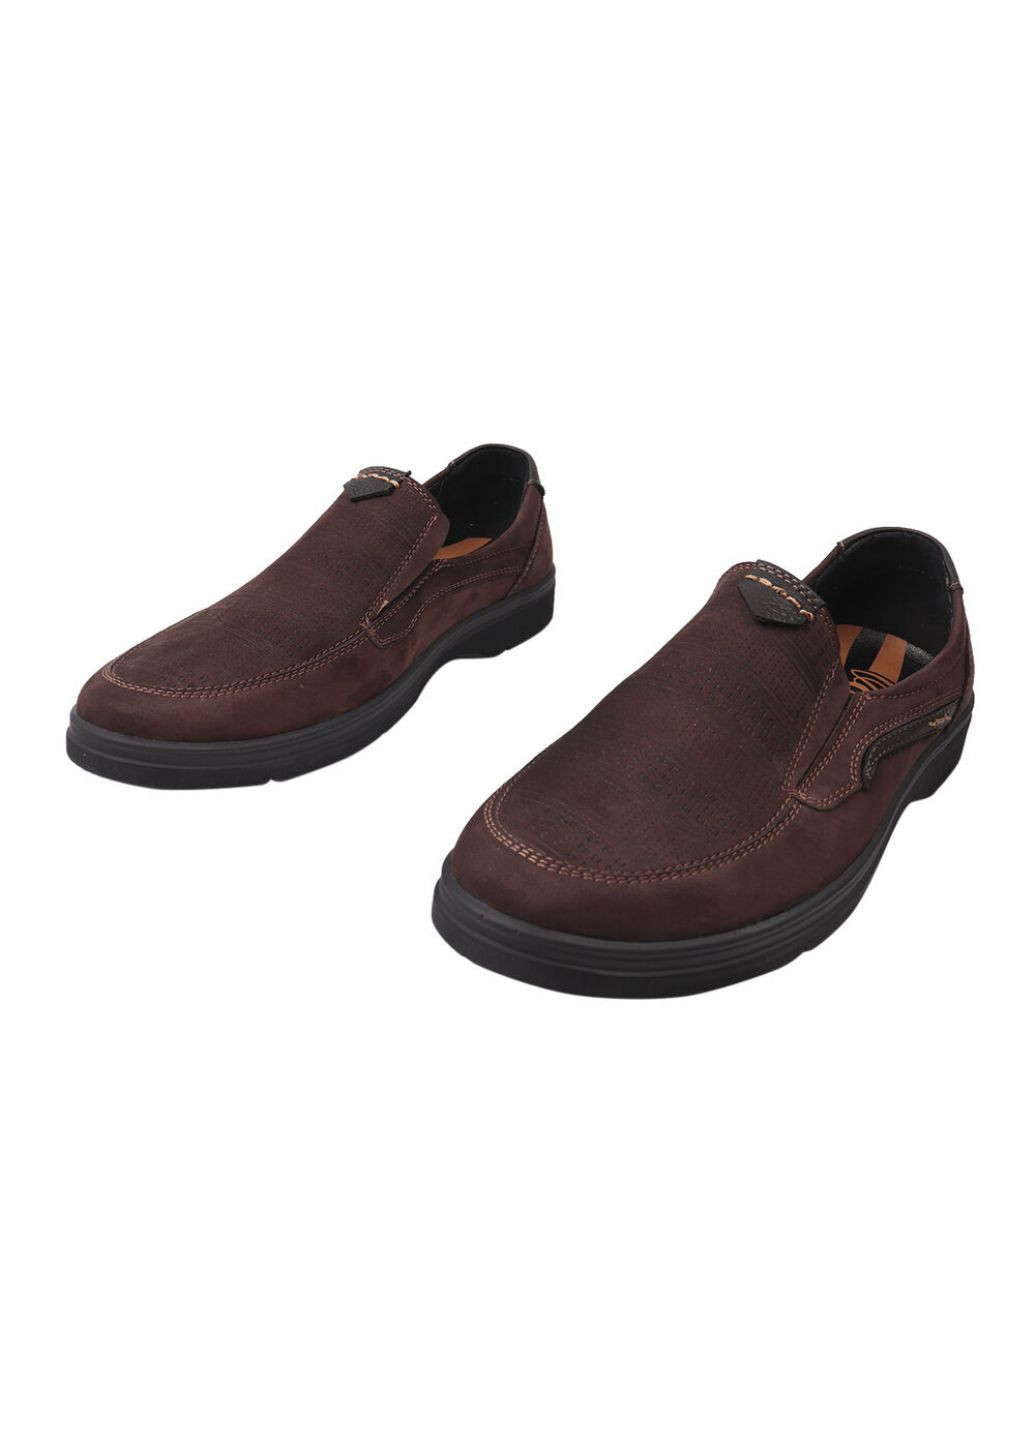 Коричневые туфли мужские из натуральной кожи (нубук), на низком ходу, цвет кабир, Vadrus